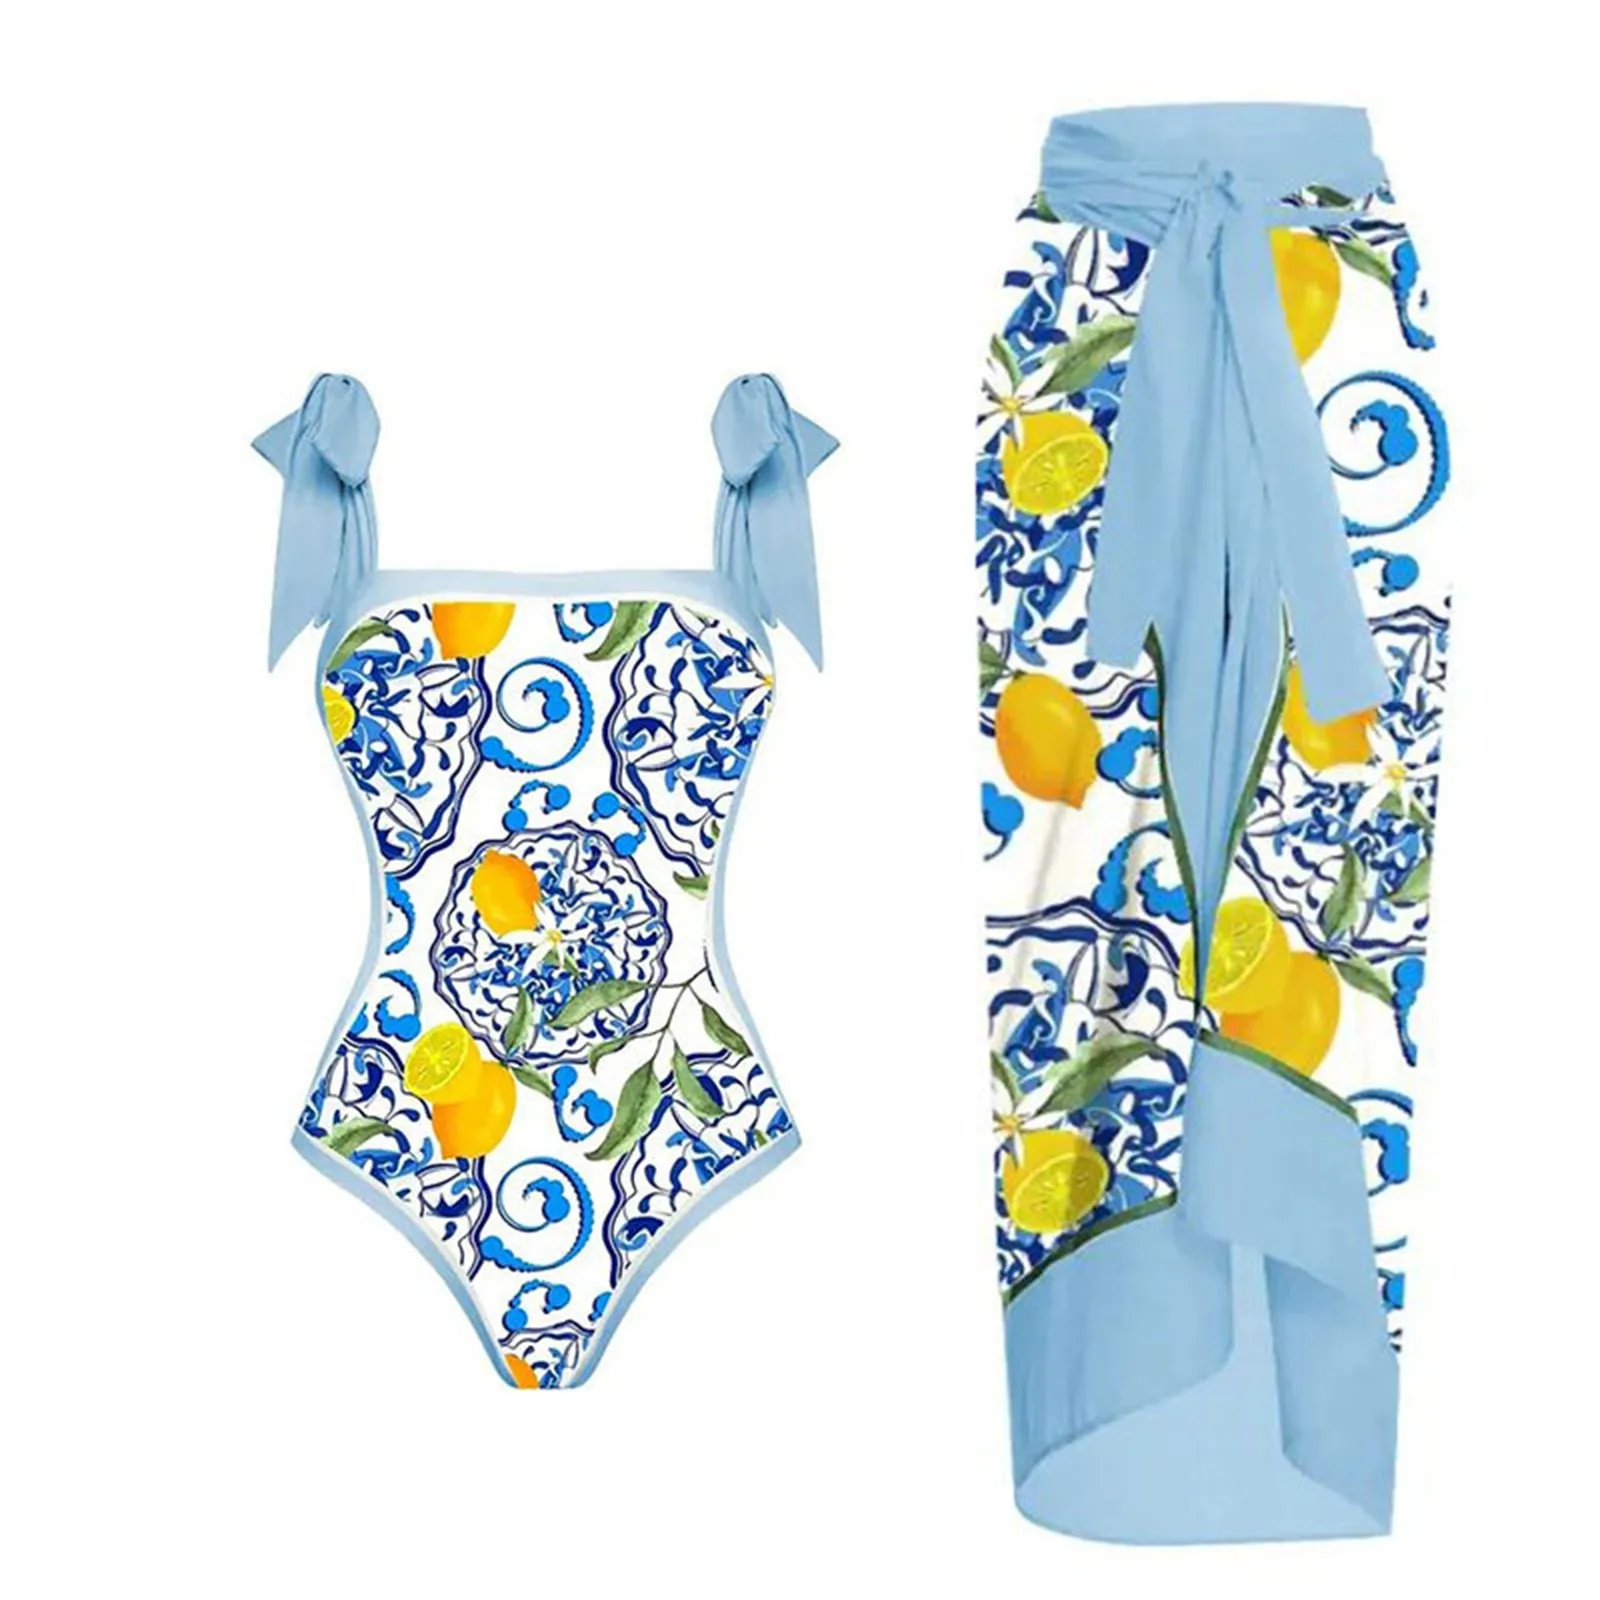 Женский винтажный купальник с лимонным принтом, цельнокроеные купальники + цельнокроеное платье, закрывающее купальник из двух частей с винтажным принтом, монокини-бикини 2